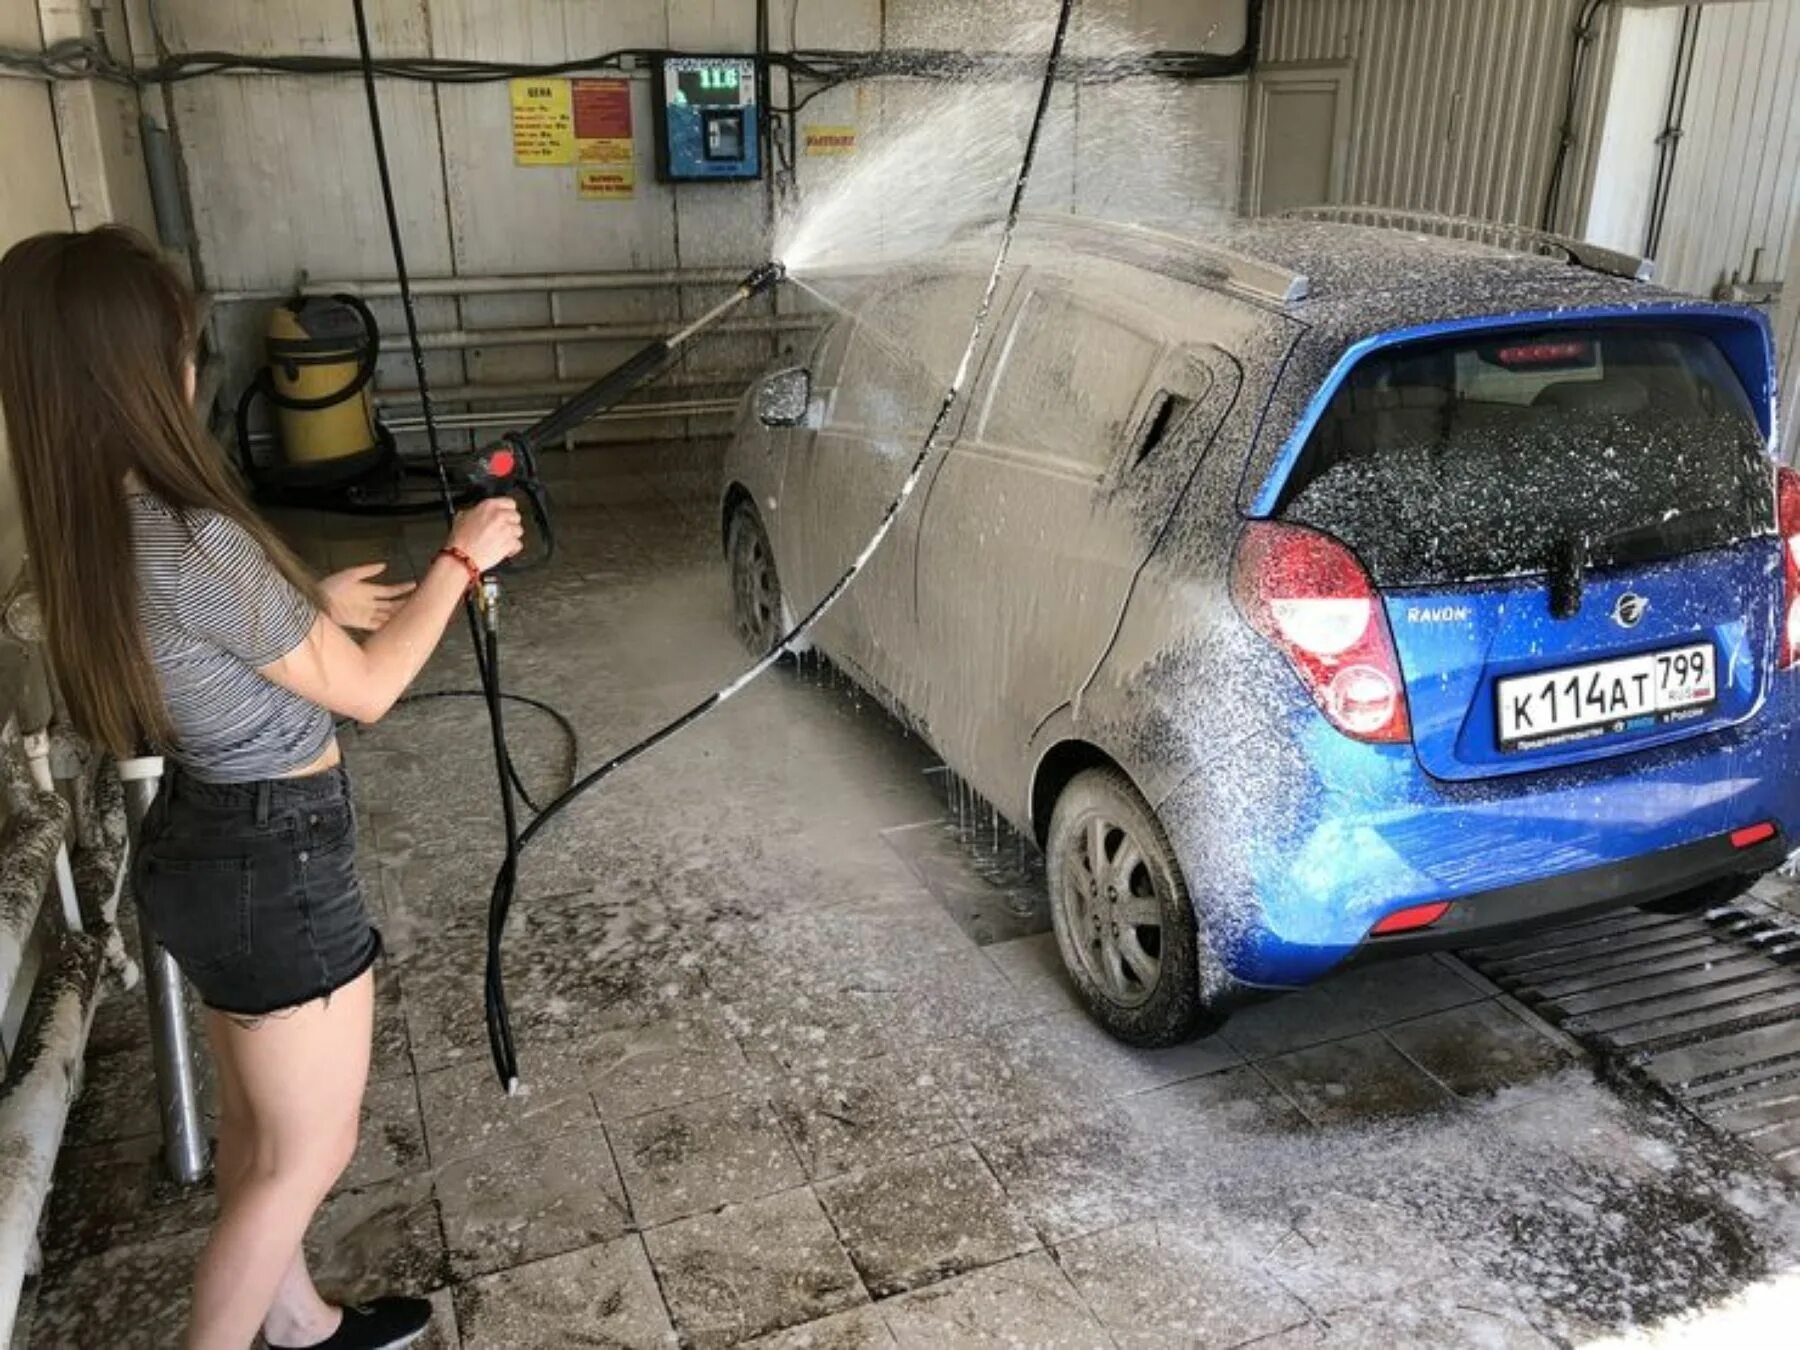 Автомойка самообслуживания car Wash. Помыть машину. Мойка машины на мойке самообслуживания. Машина на автомойке. Автомойка как пользоваться видео